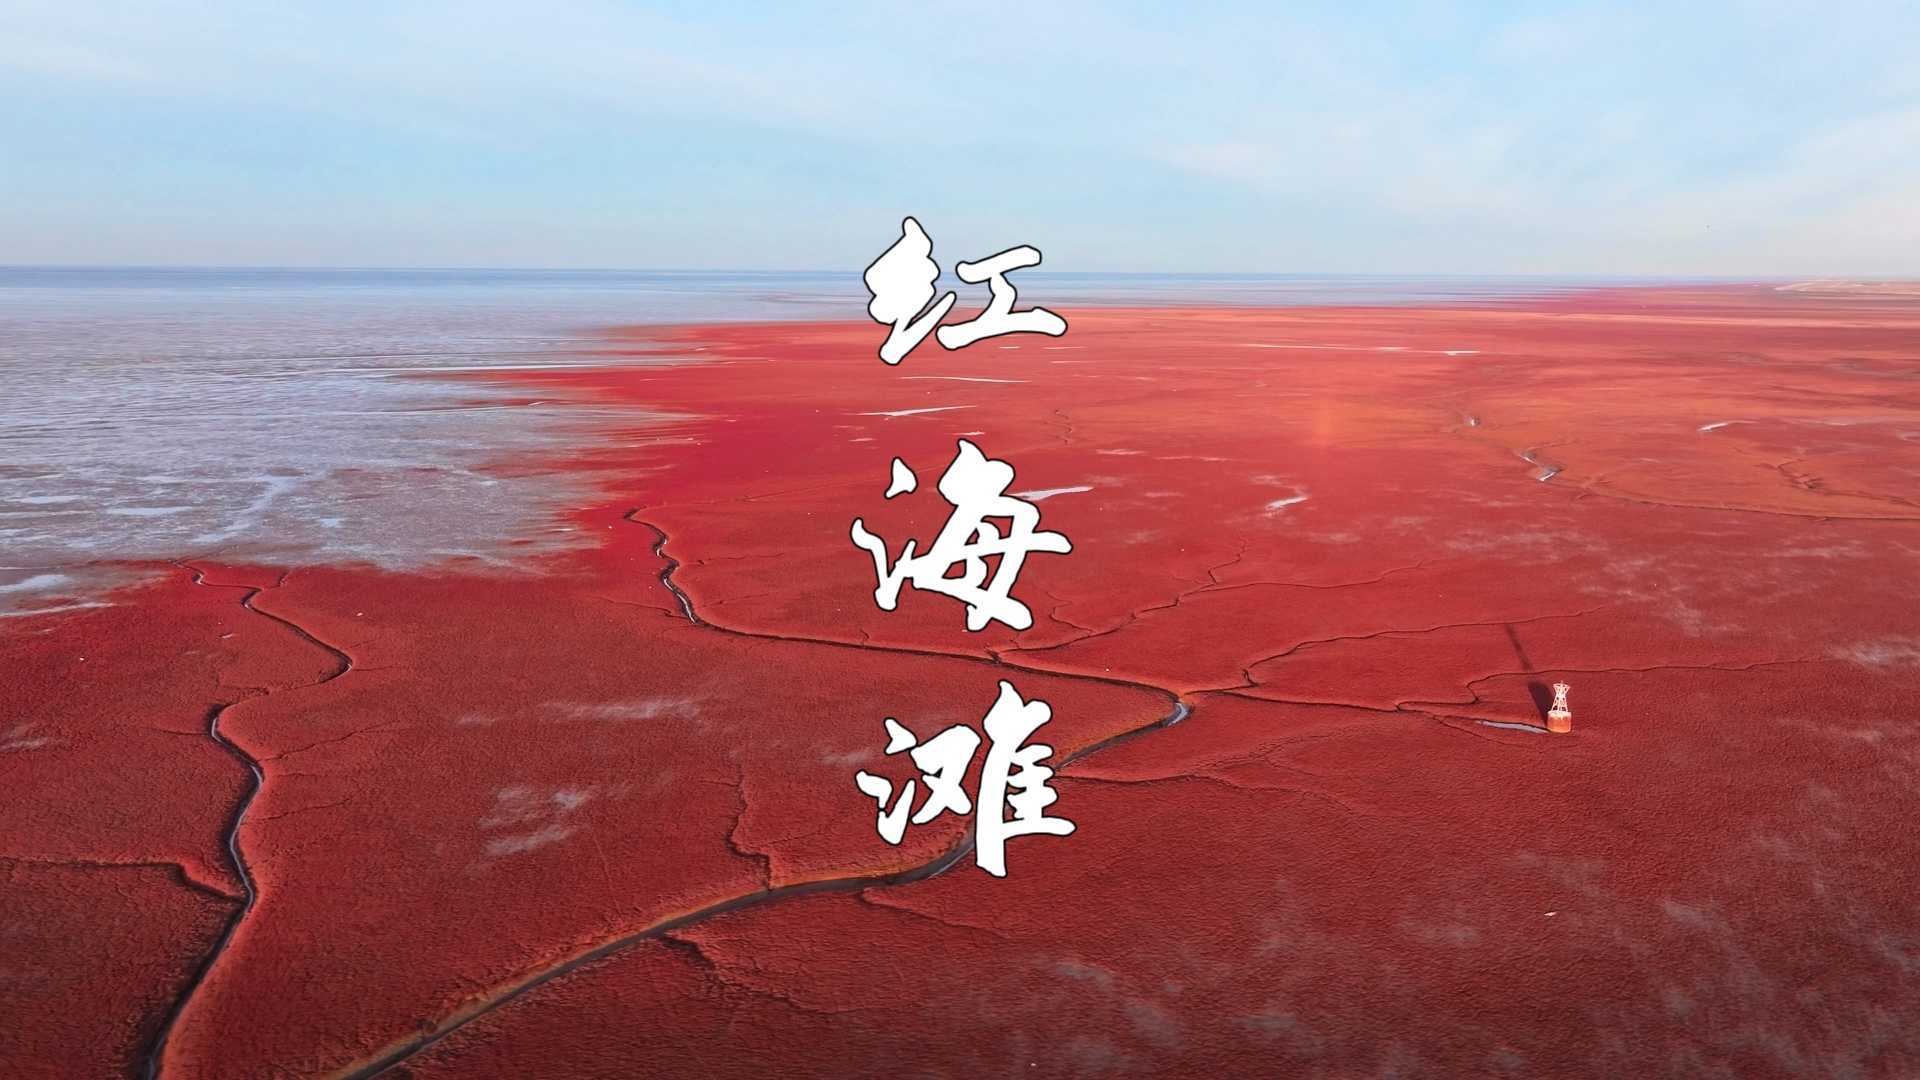 【红海滩】在中国海岸线最北端，看世界最大的红海滩